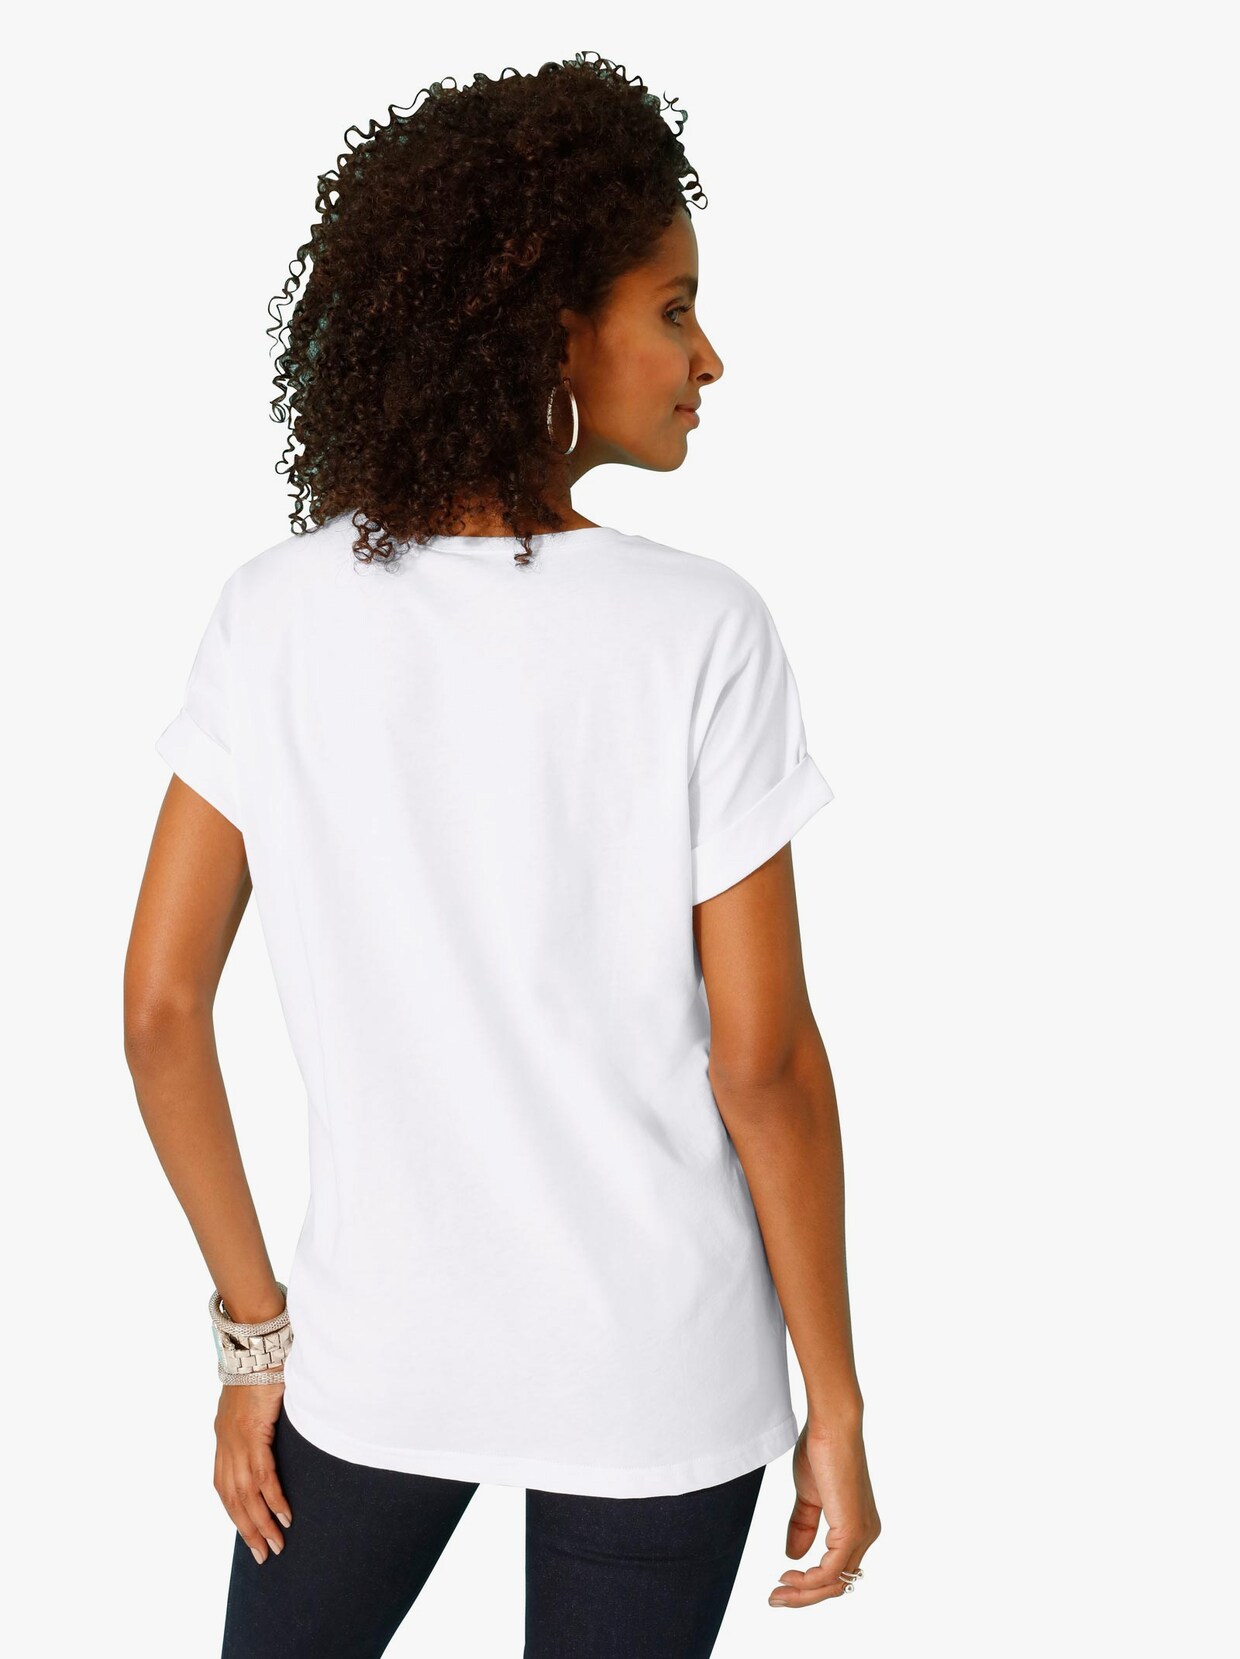 Tričko s krátkým rukávem - bílá-vzor